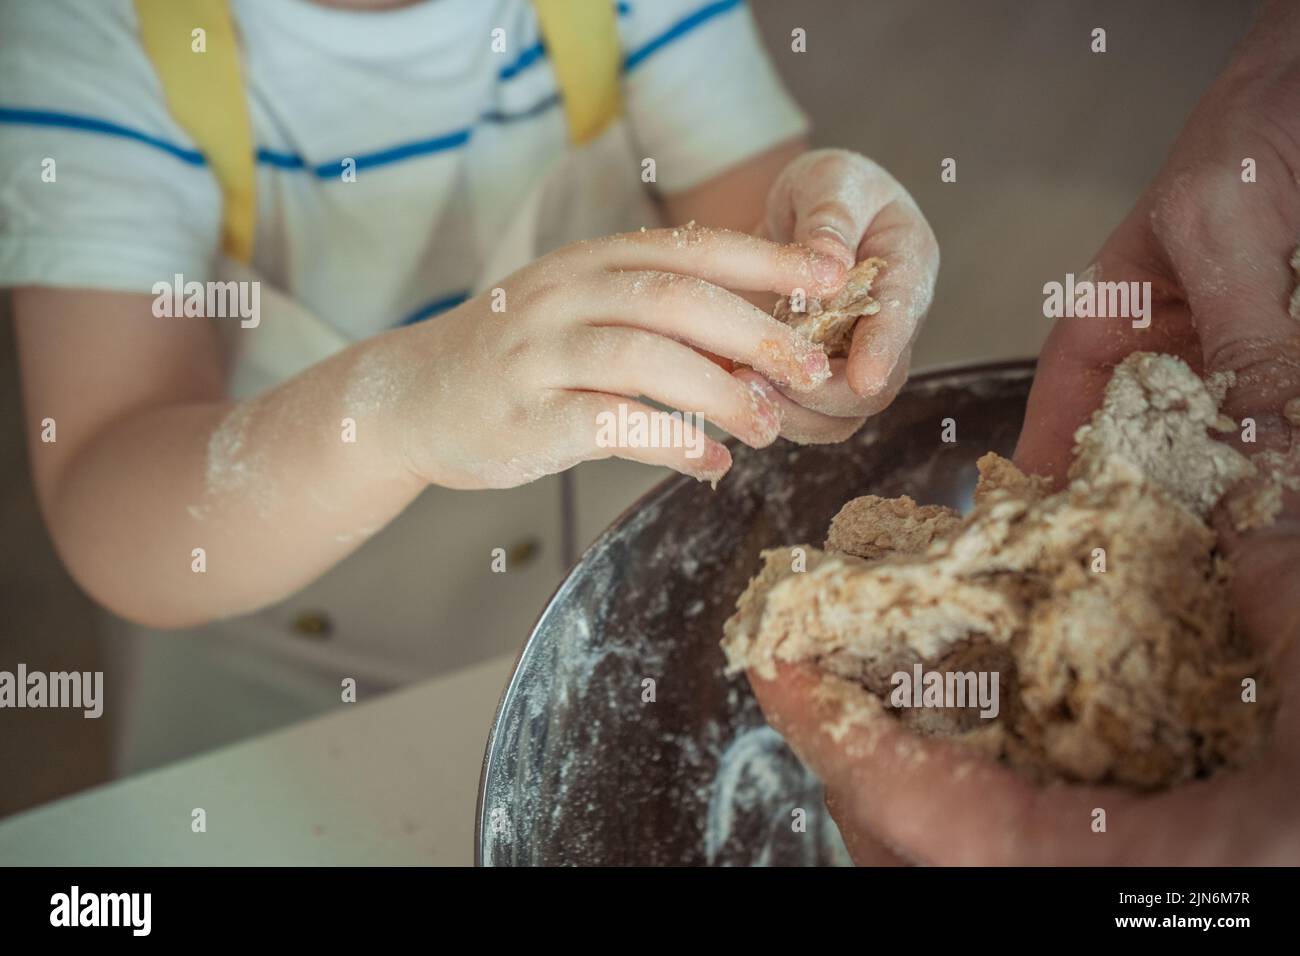 Las manos de un niño recortado están haciendo una masa para un pastel Foto de stock